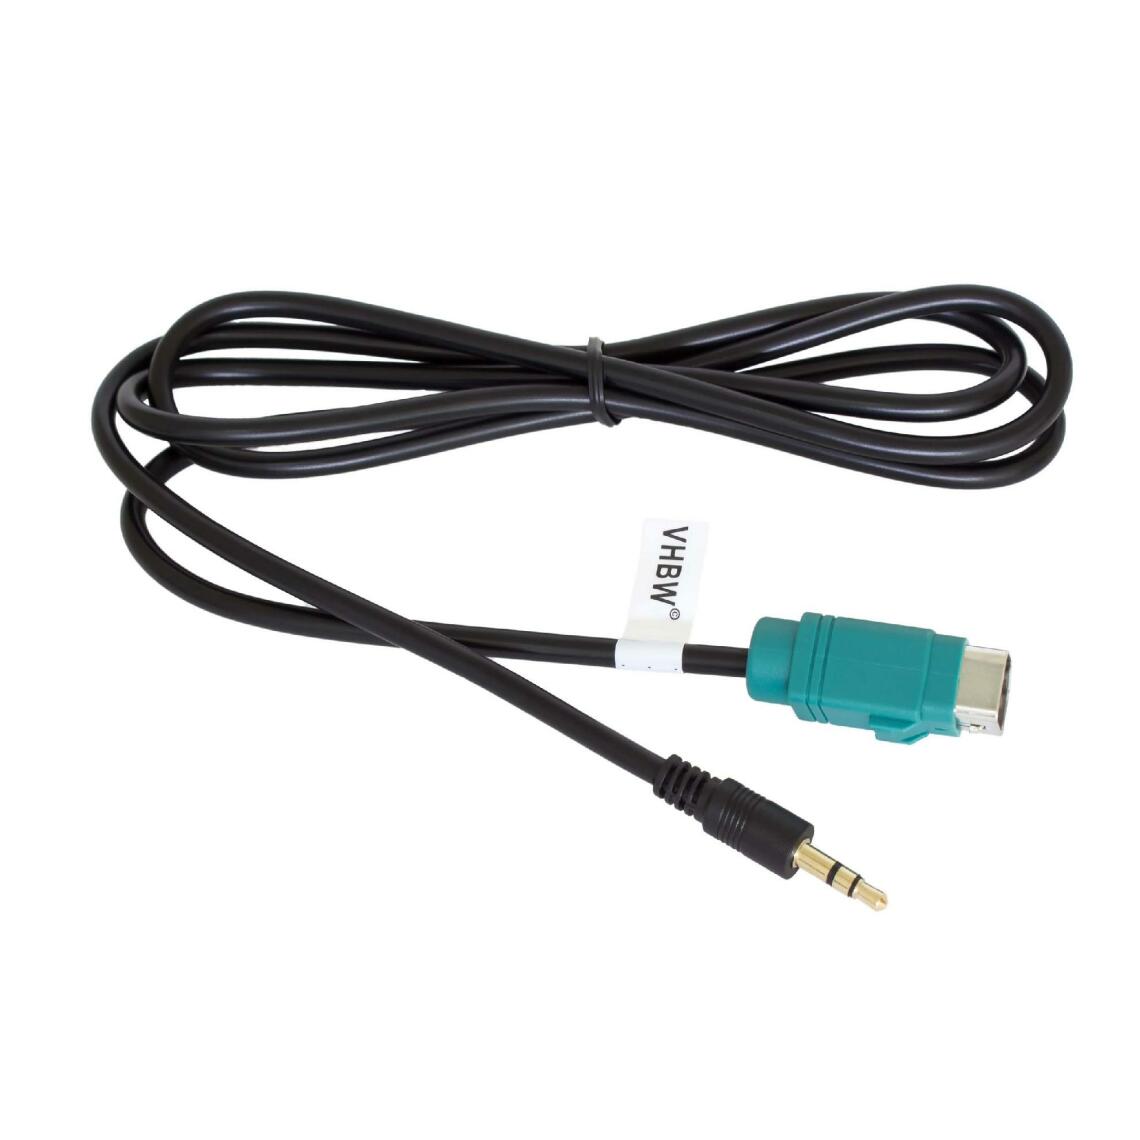 Vhbw - vhbw Câble adaptateur de ligne AUX Radio compatible avec Alpine IDA-X303, IDA-X305, IDA-X311, IDA-X313, IXA-W404R, IXA-W407BT, TME-S370 - USB - Alimentation modulaire